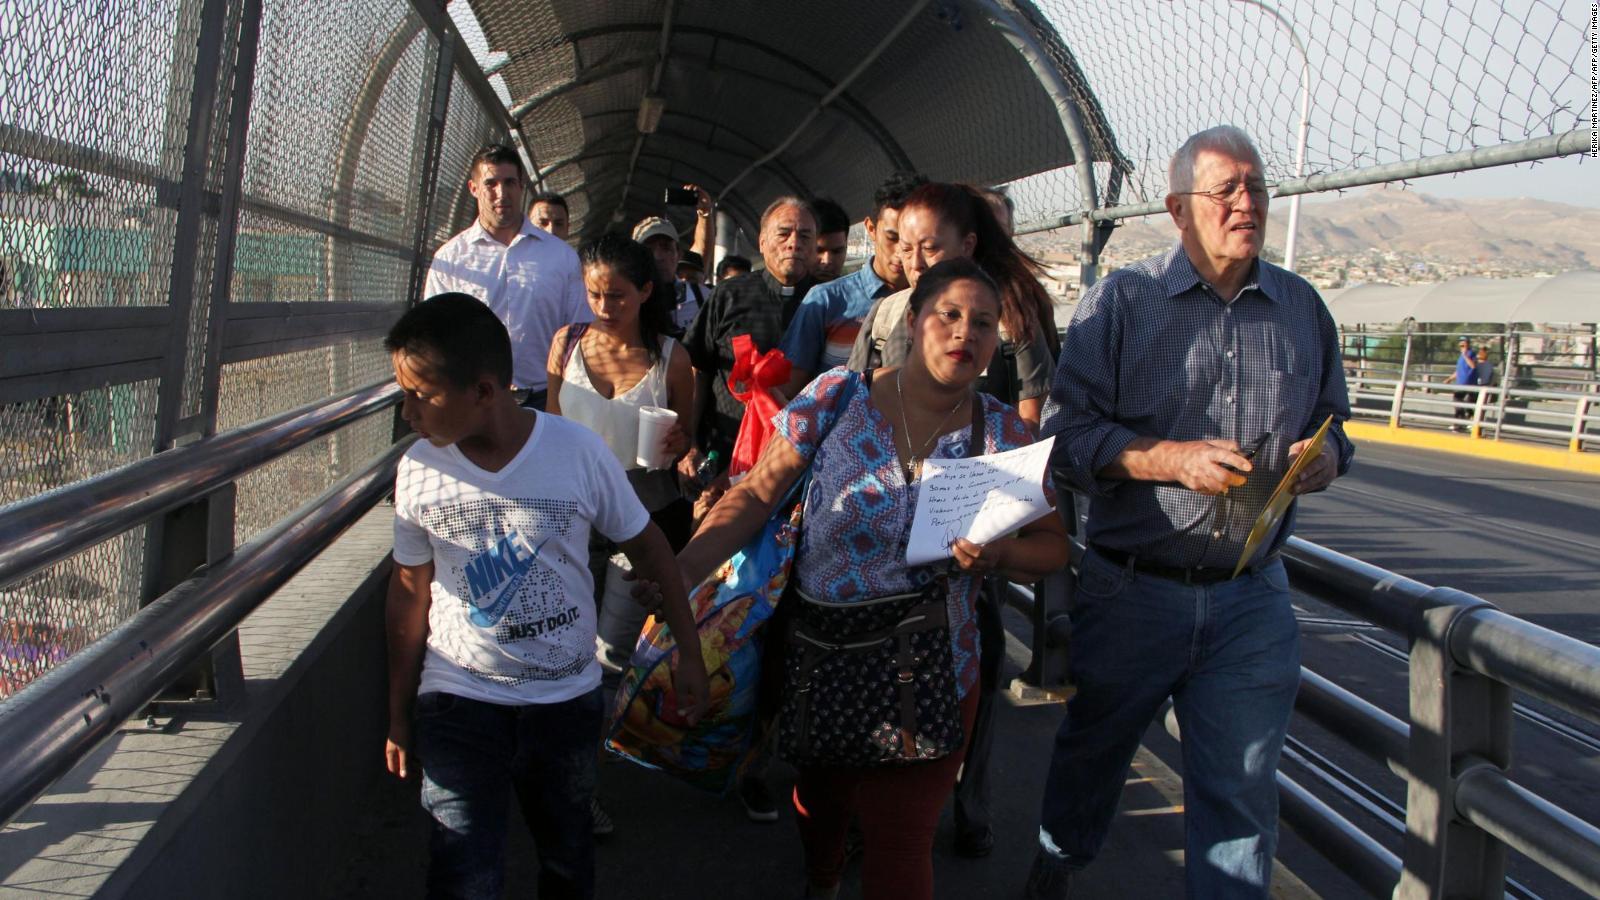 Condenan separación de familias inmigrantes en Estados Unidos